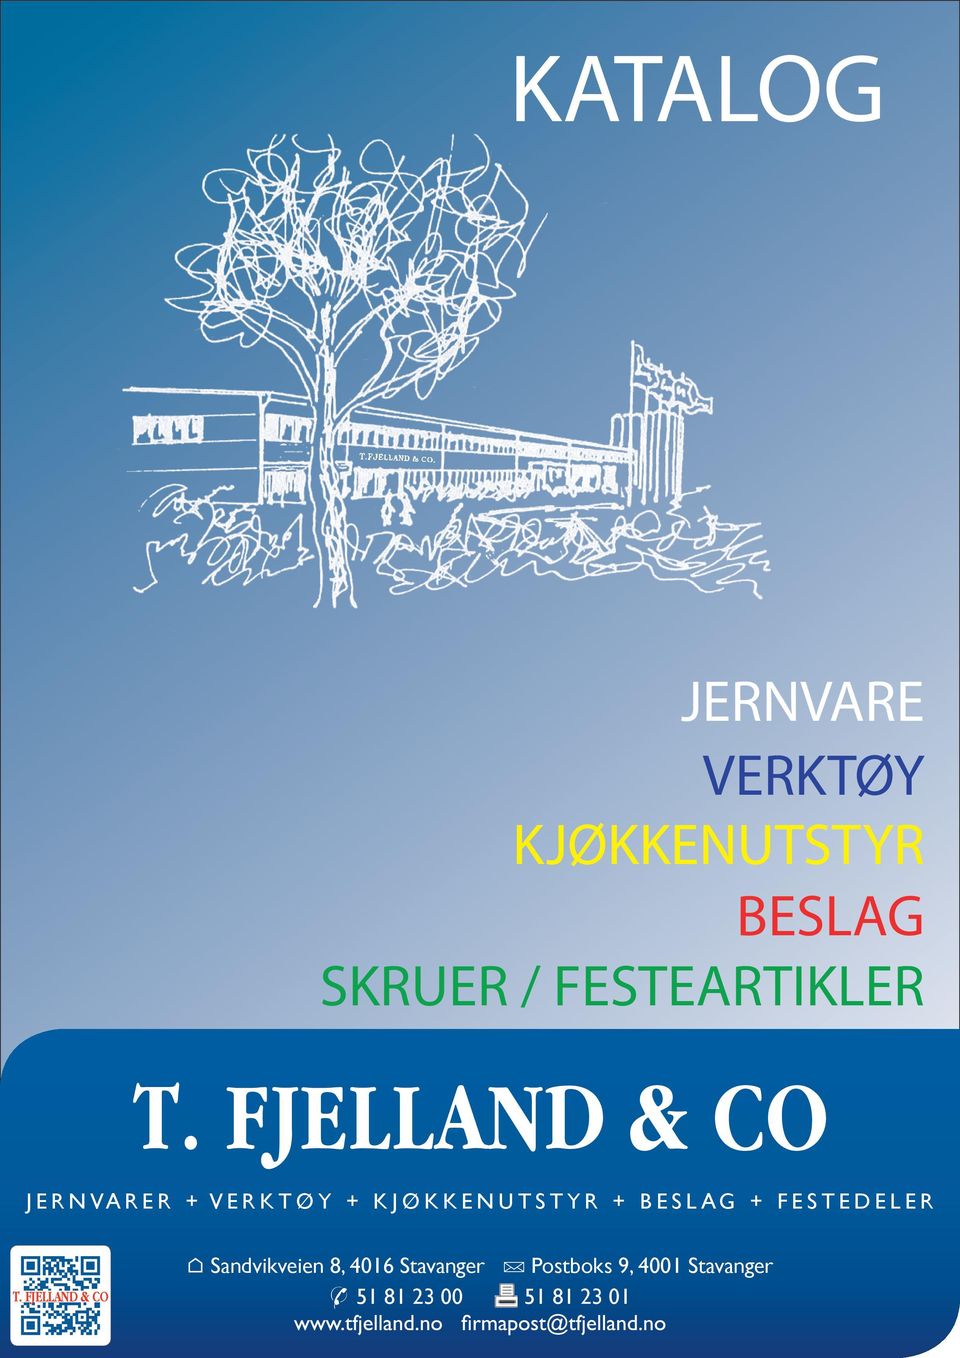 FJELLAND & CO JERNVA RER + V E R KTØY + KJØ KKENU T STY R +